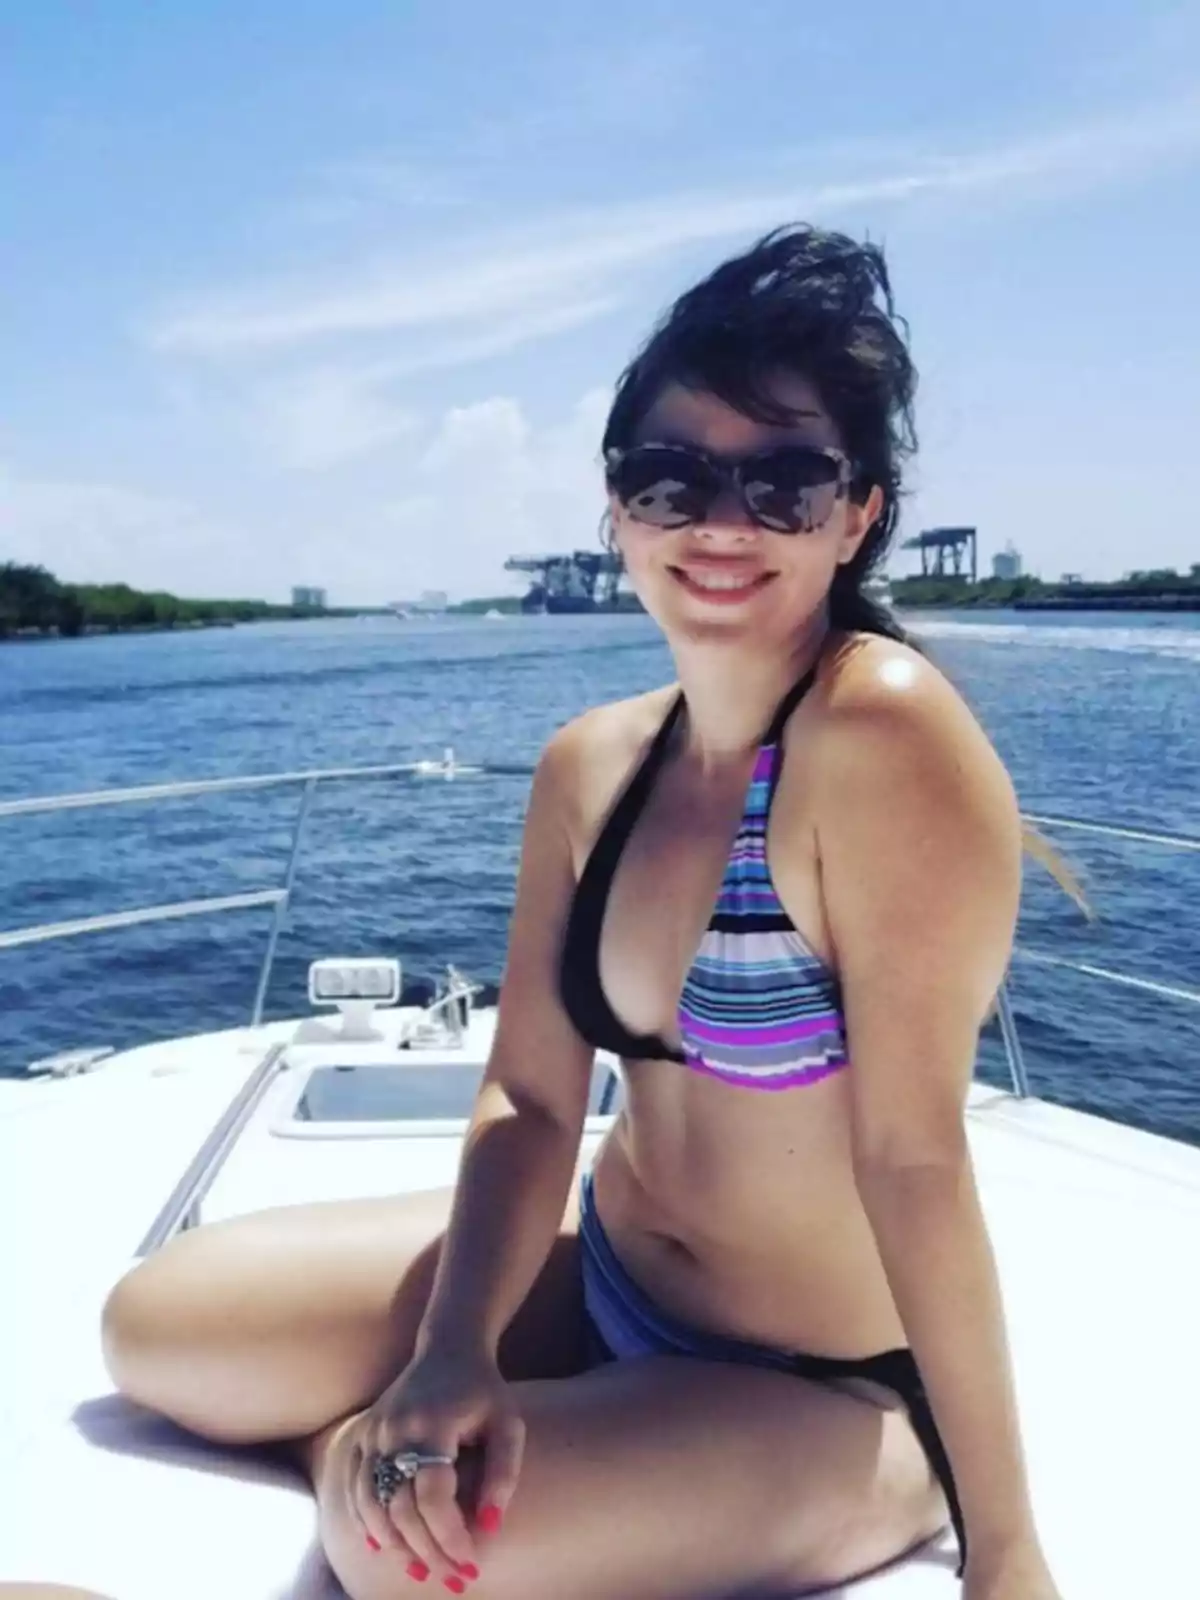 Mujer en bikini con gafas de sol sonriendo mientras está sentada en un bote con el mar y un cielo despejado de fondo.